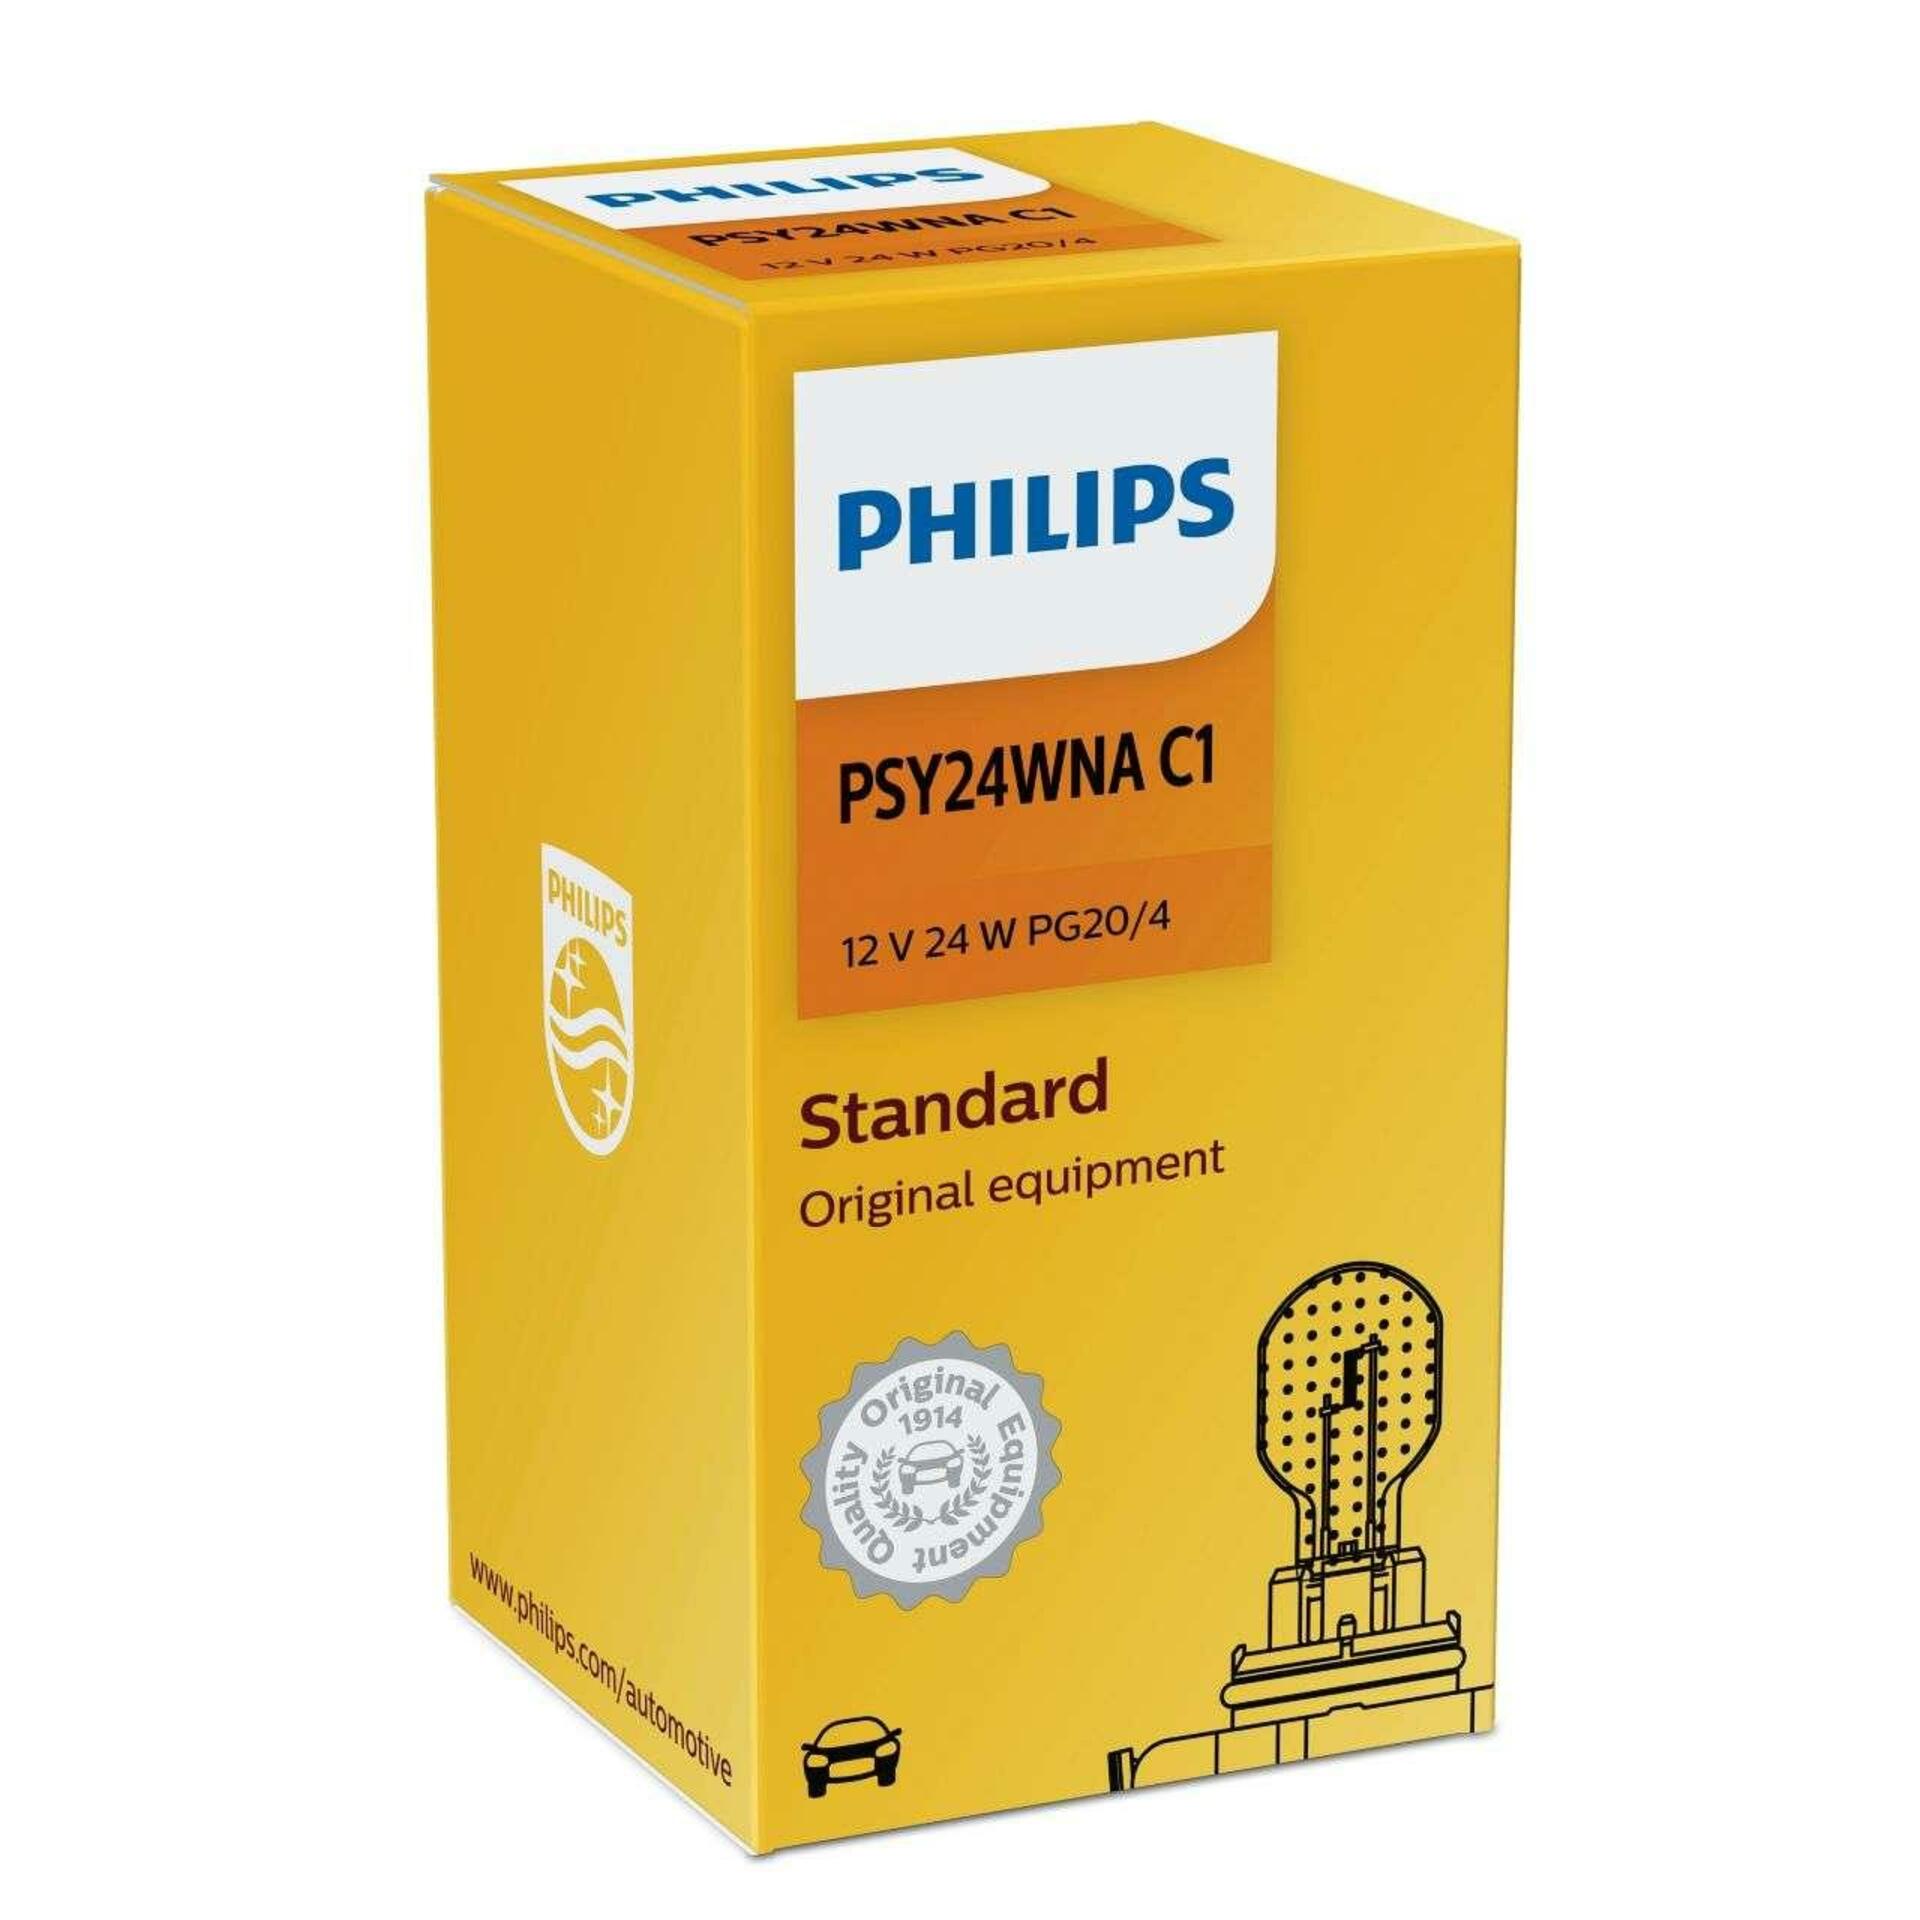 Philips PSY24W 12V 24W PG20/4 12188C1